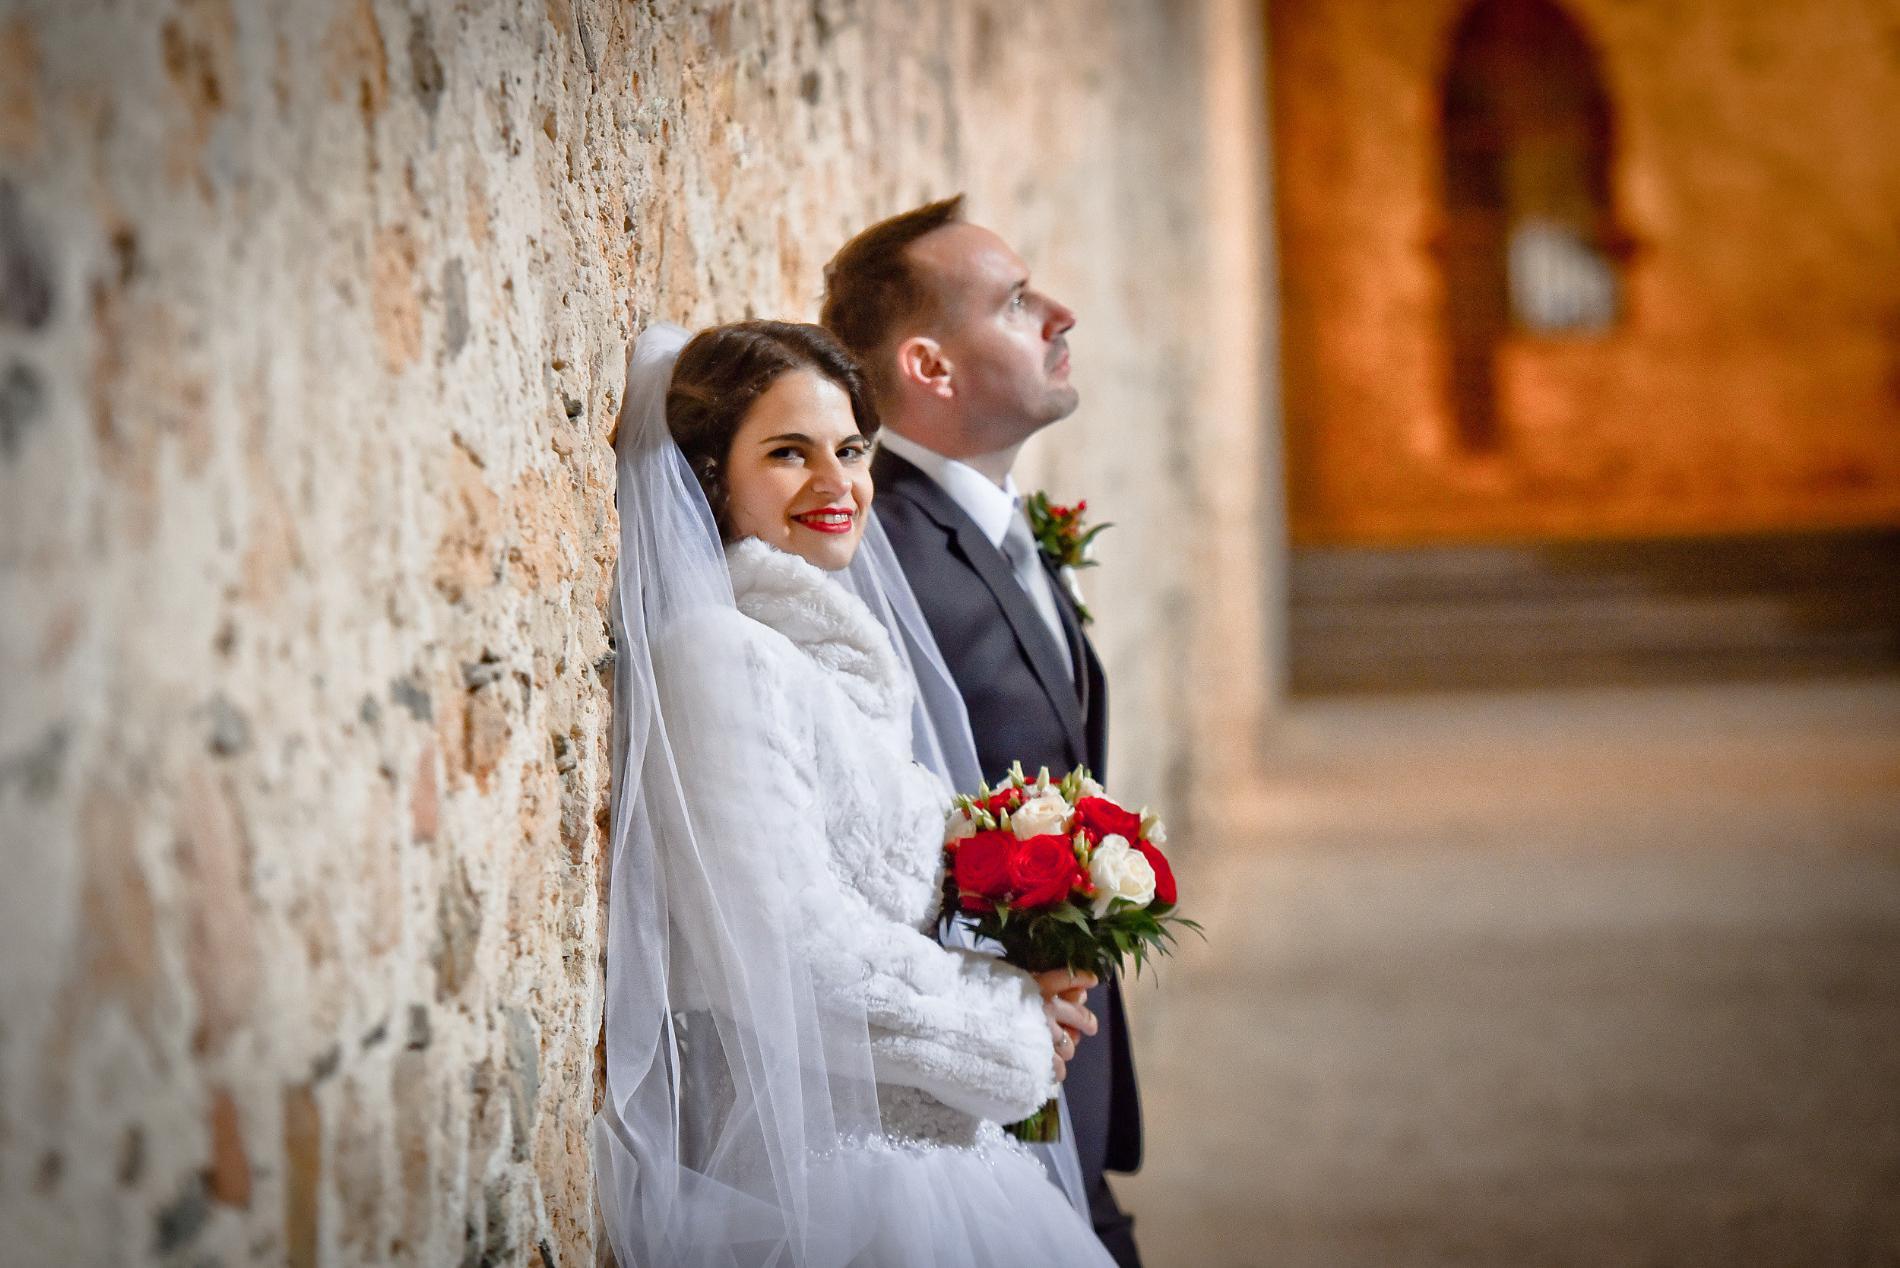 Hĺbka ostrosti svadba svadobný fotograf nevesta ženích Lindia.sk